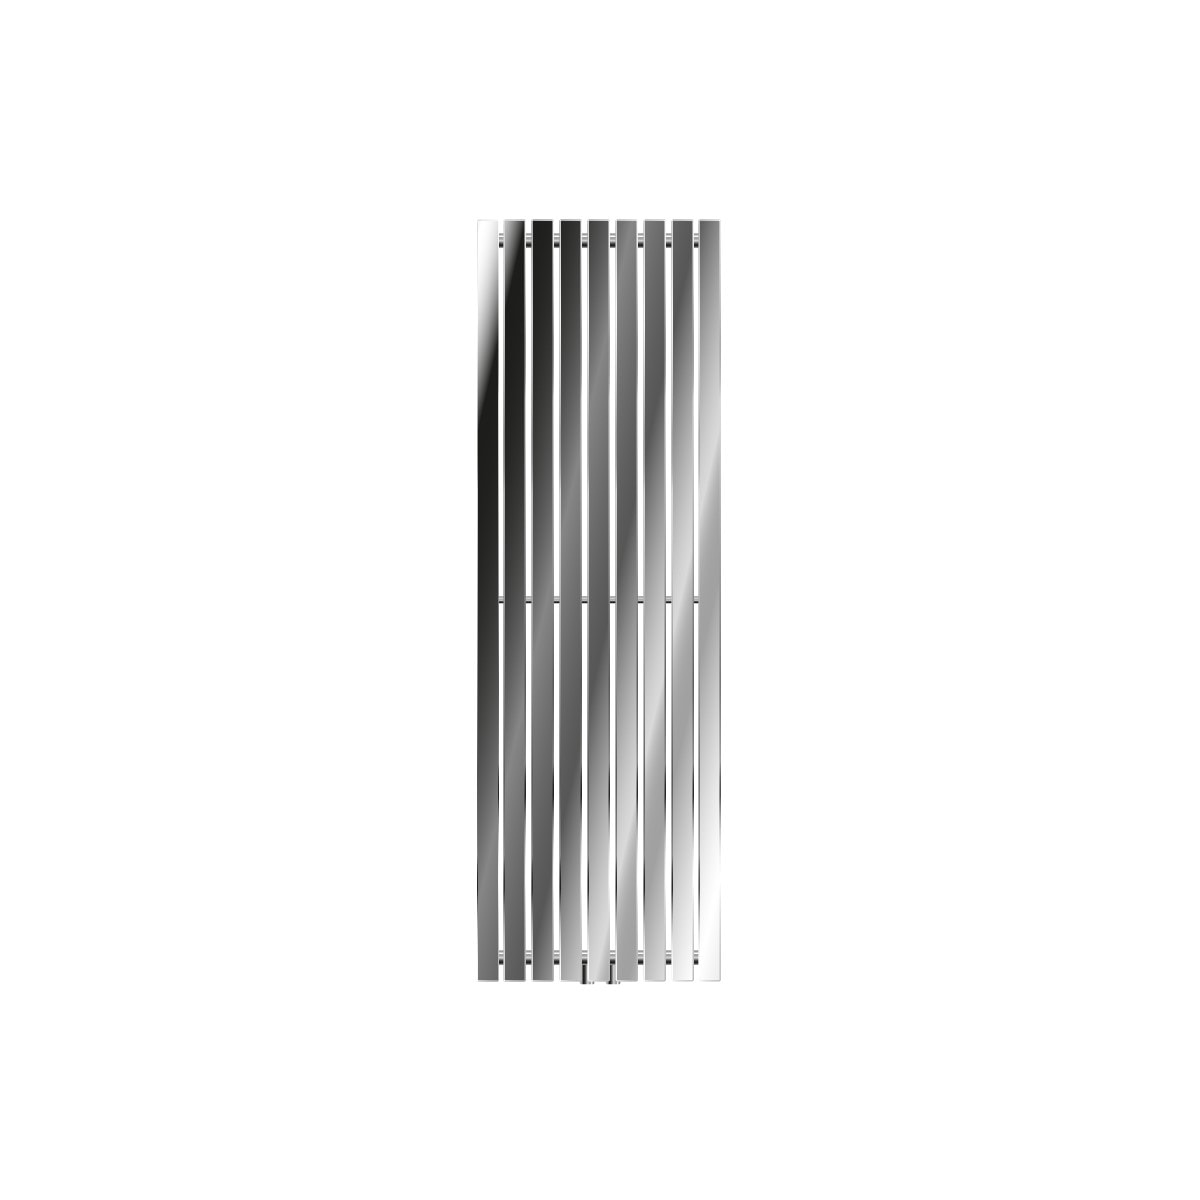 GXFC Radiateur Sèche-Serviette Électrique Séchoir à Serviettes Mural 8 Barres Brancher 530 x 900 mm 50 ° C température constante Porte-Serviettes Chauffant en Acier Inoxydable 150W 